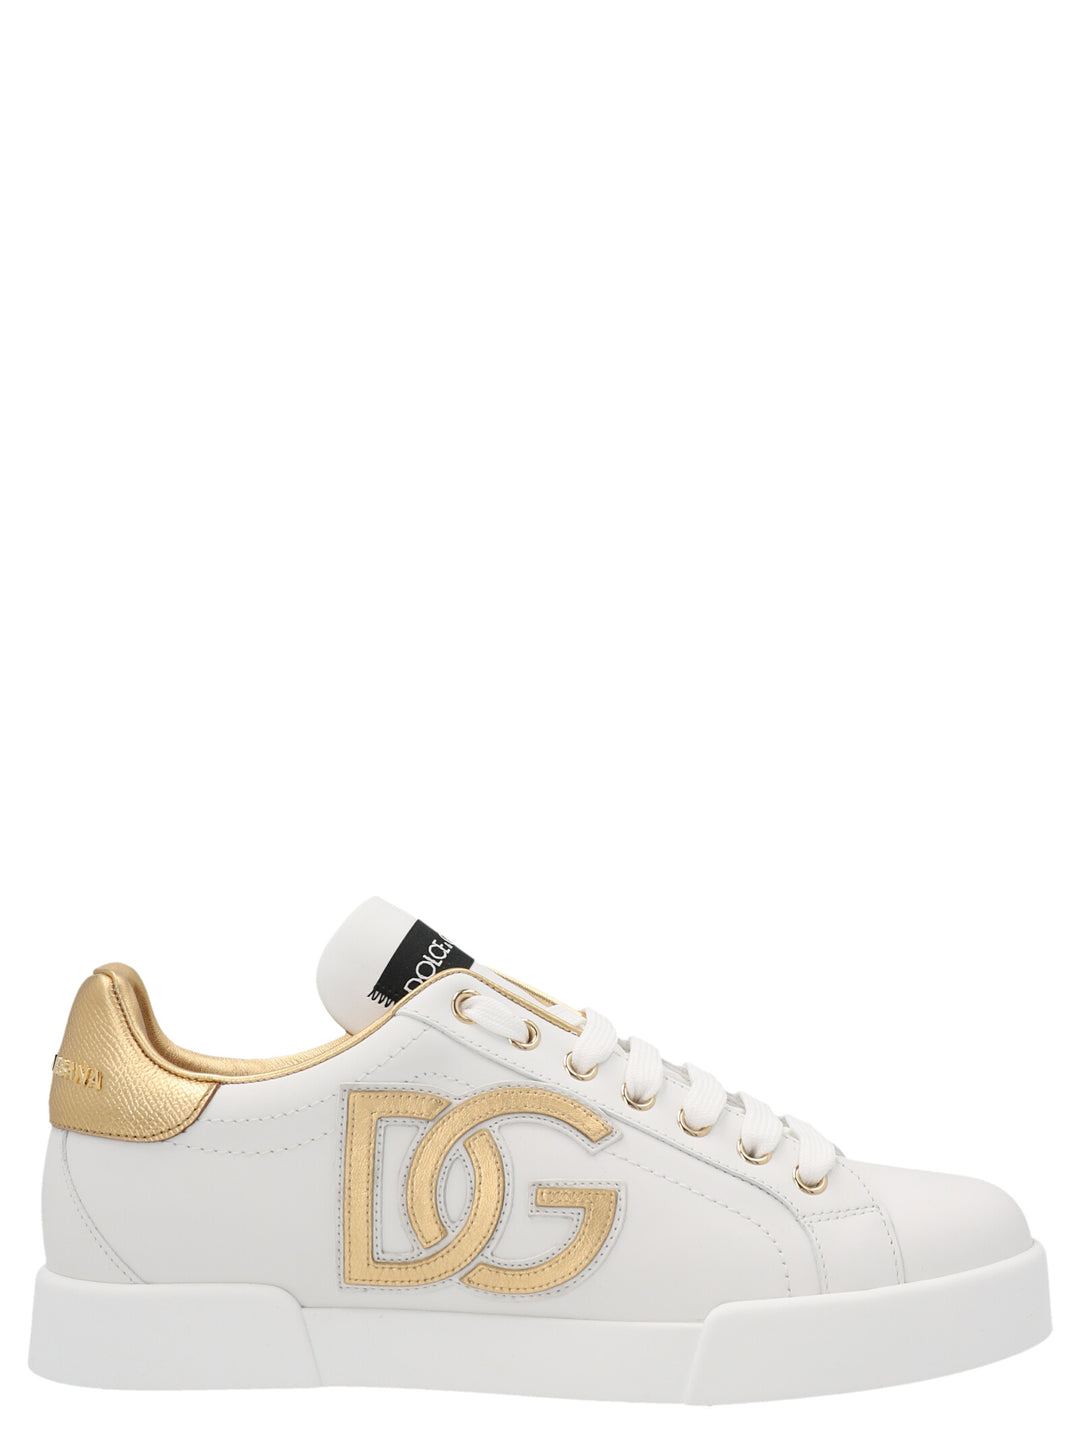 'Portofino' Sneakers Oro